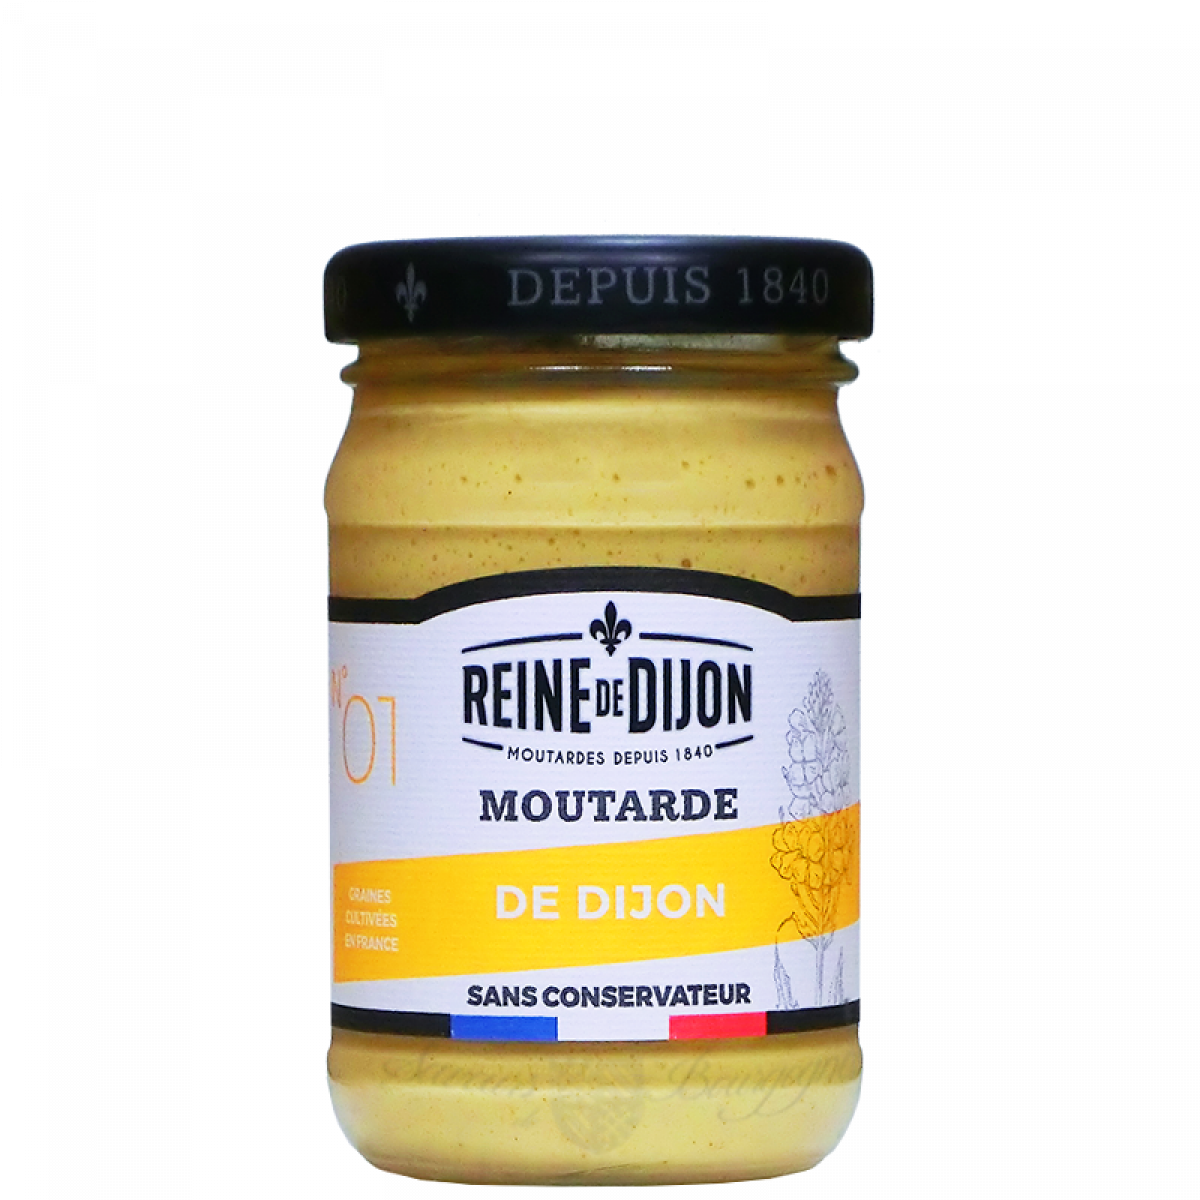 Moutarde de Dijon- Regal des Sens